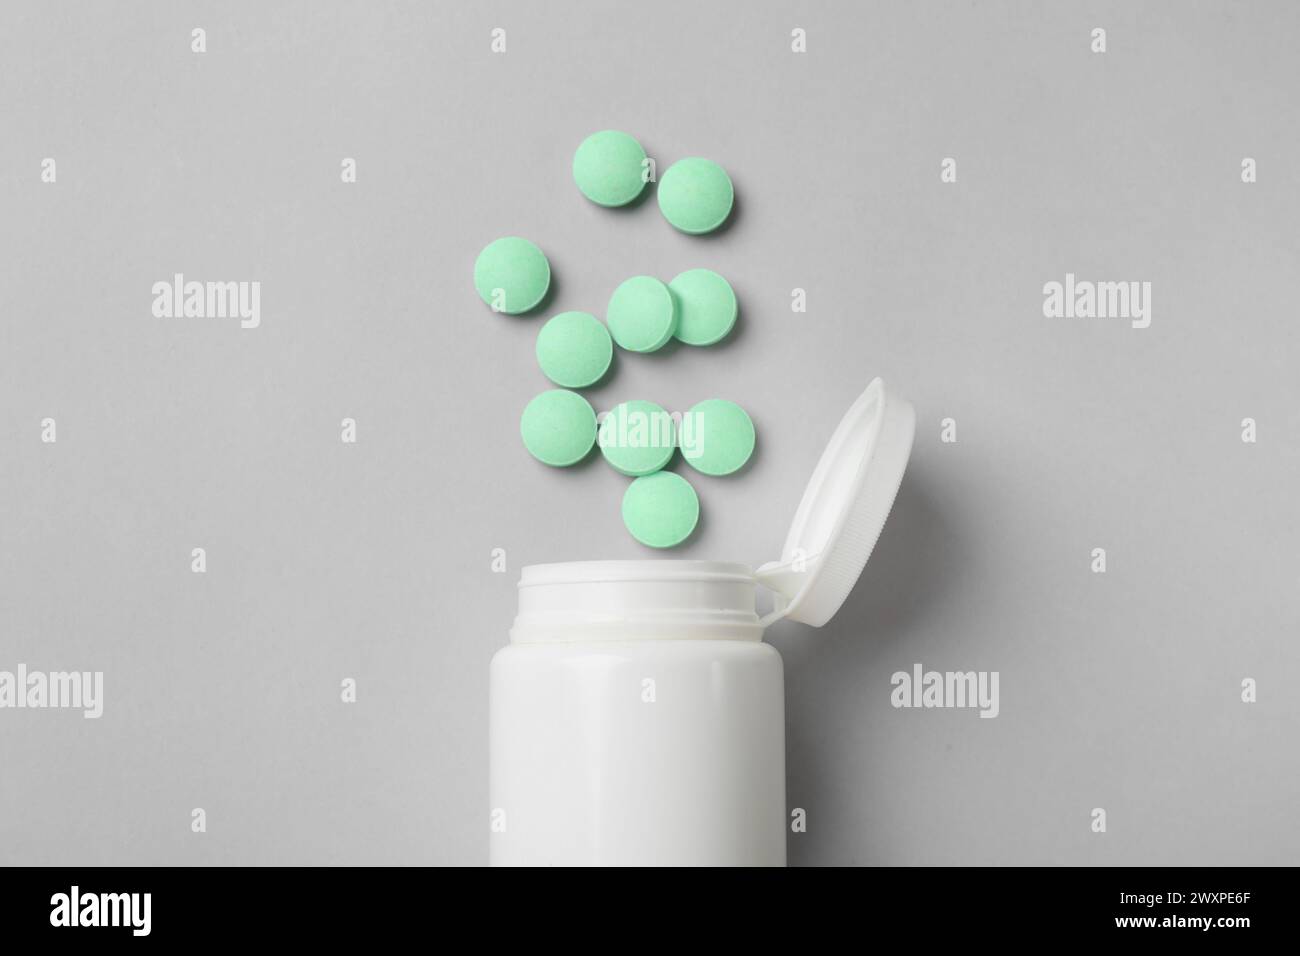 Pillole vitaminiche e bottiglia verde chiaro su sfondo grigio, vista dall'alto Foto Stock